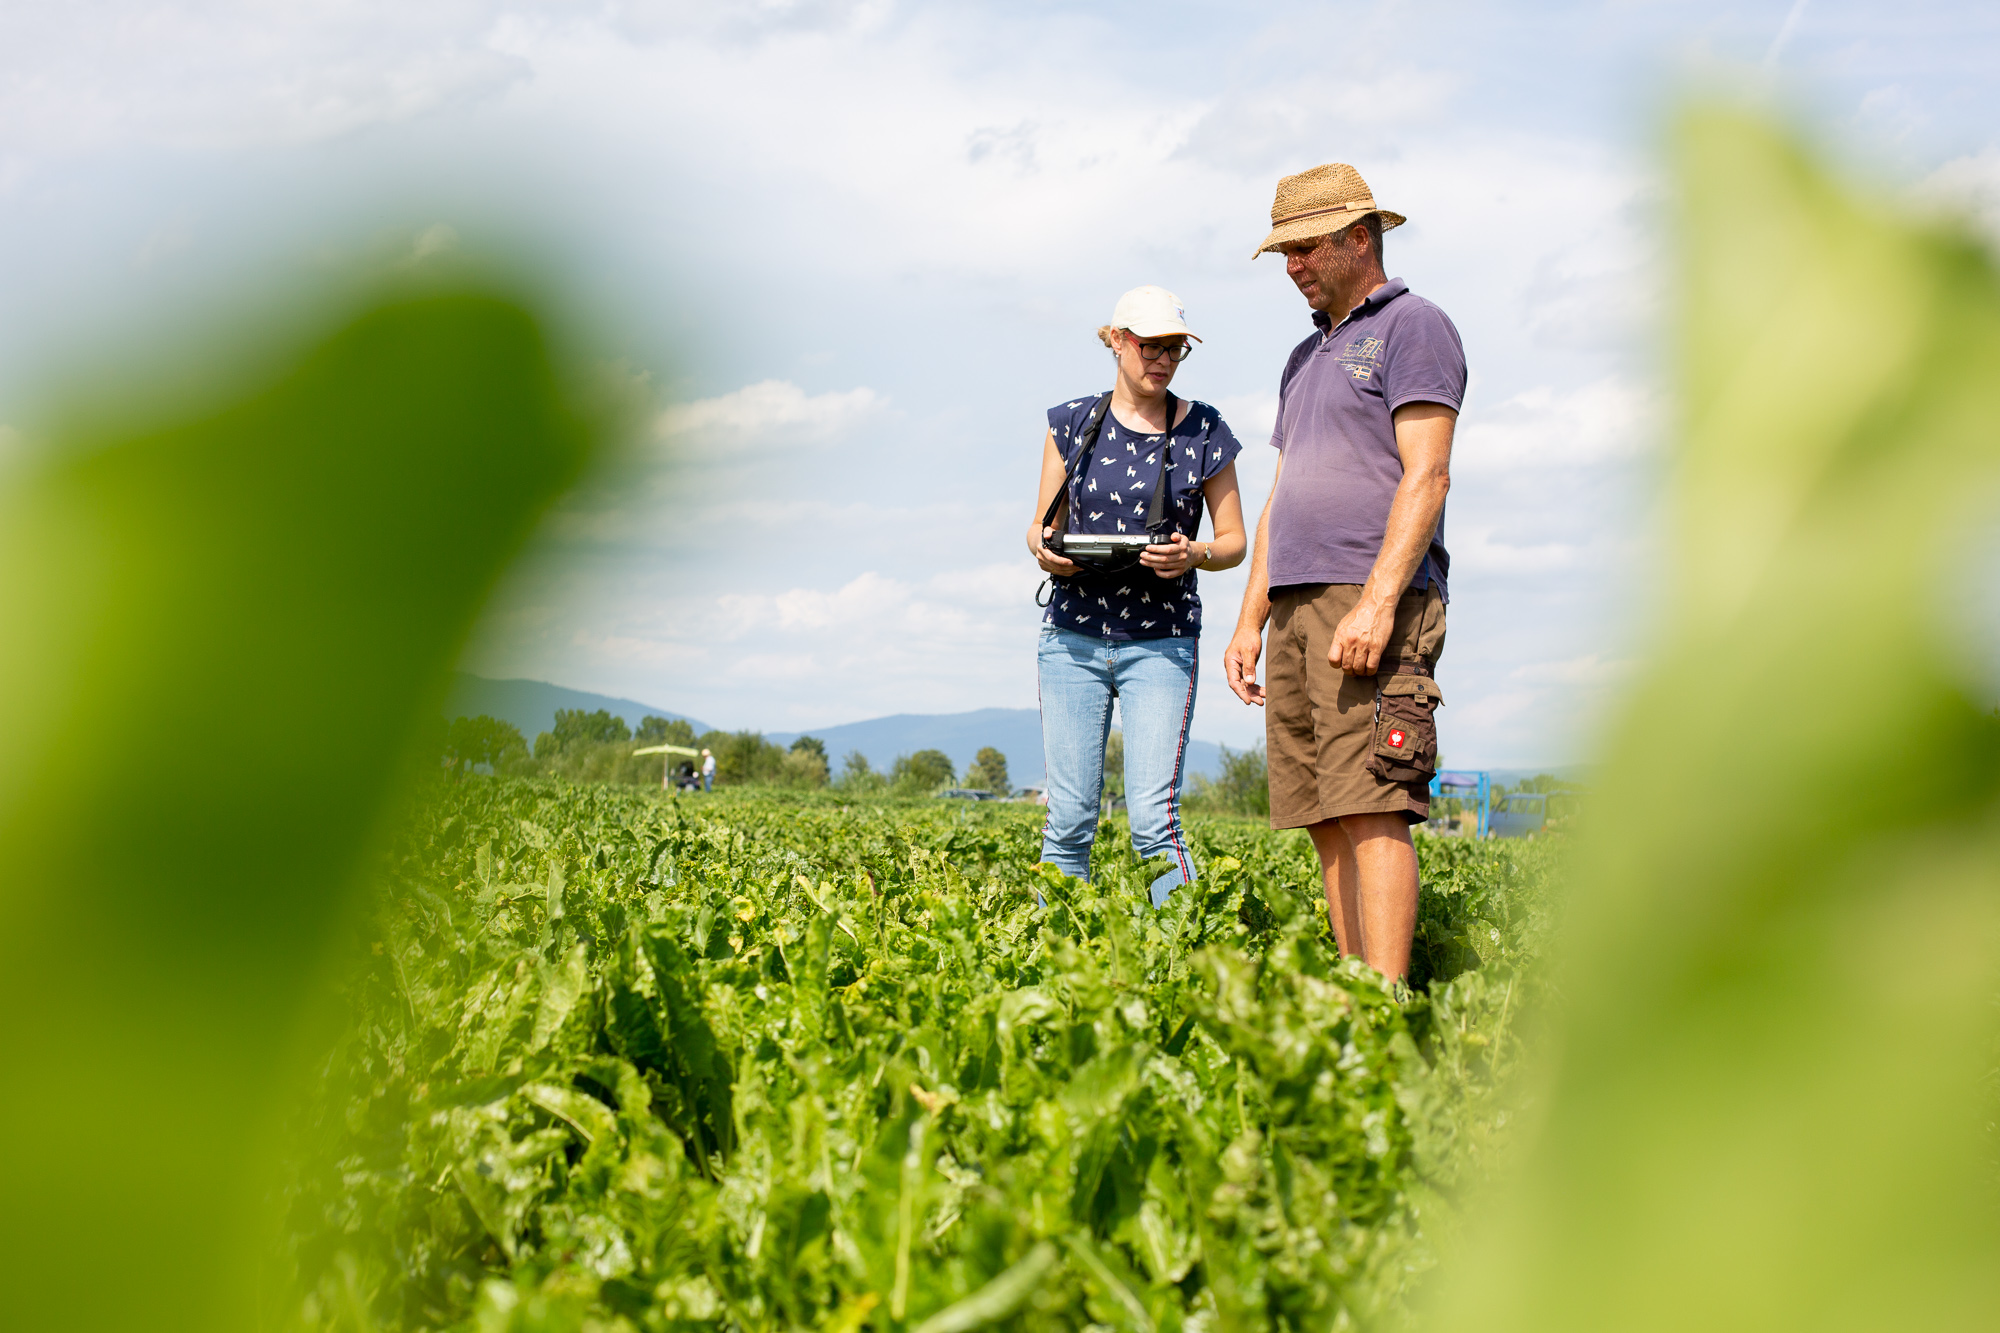 Ludmilla Dahl, Züchtungsexpertin von KWS, steht mit Anton Nachreichen, dem Regionalbetreuer des Zuckerrüben-Versuchsfelds von KWS in Plattling (Bayern), zwischen den gepflanzten Zuckerrüben.